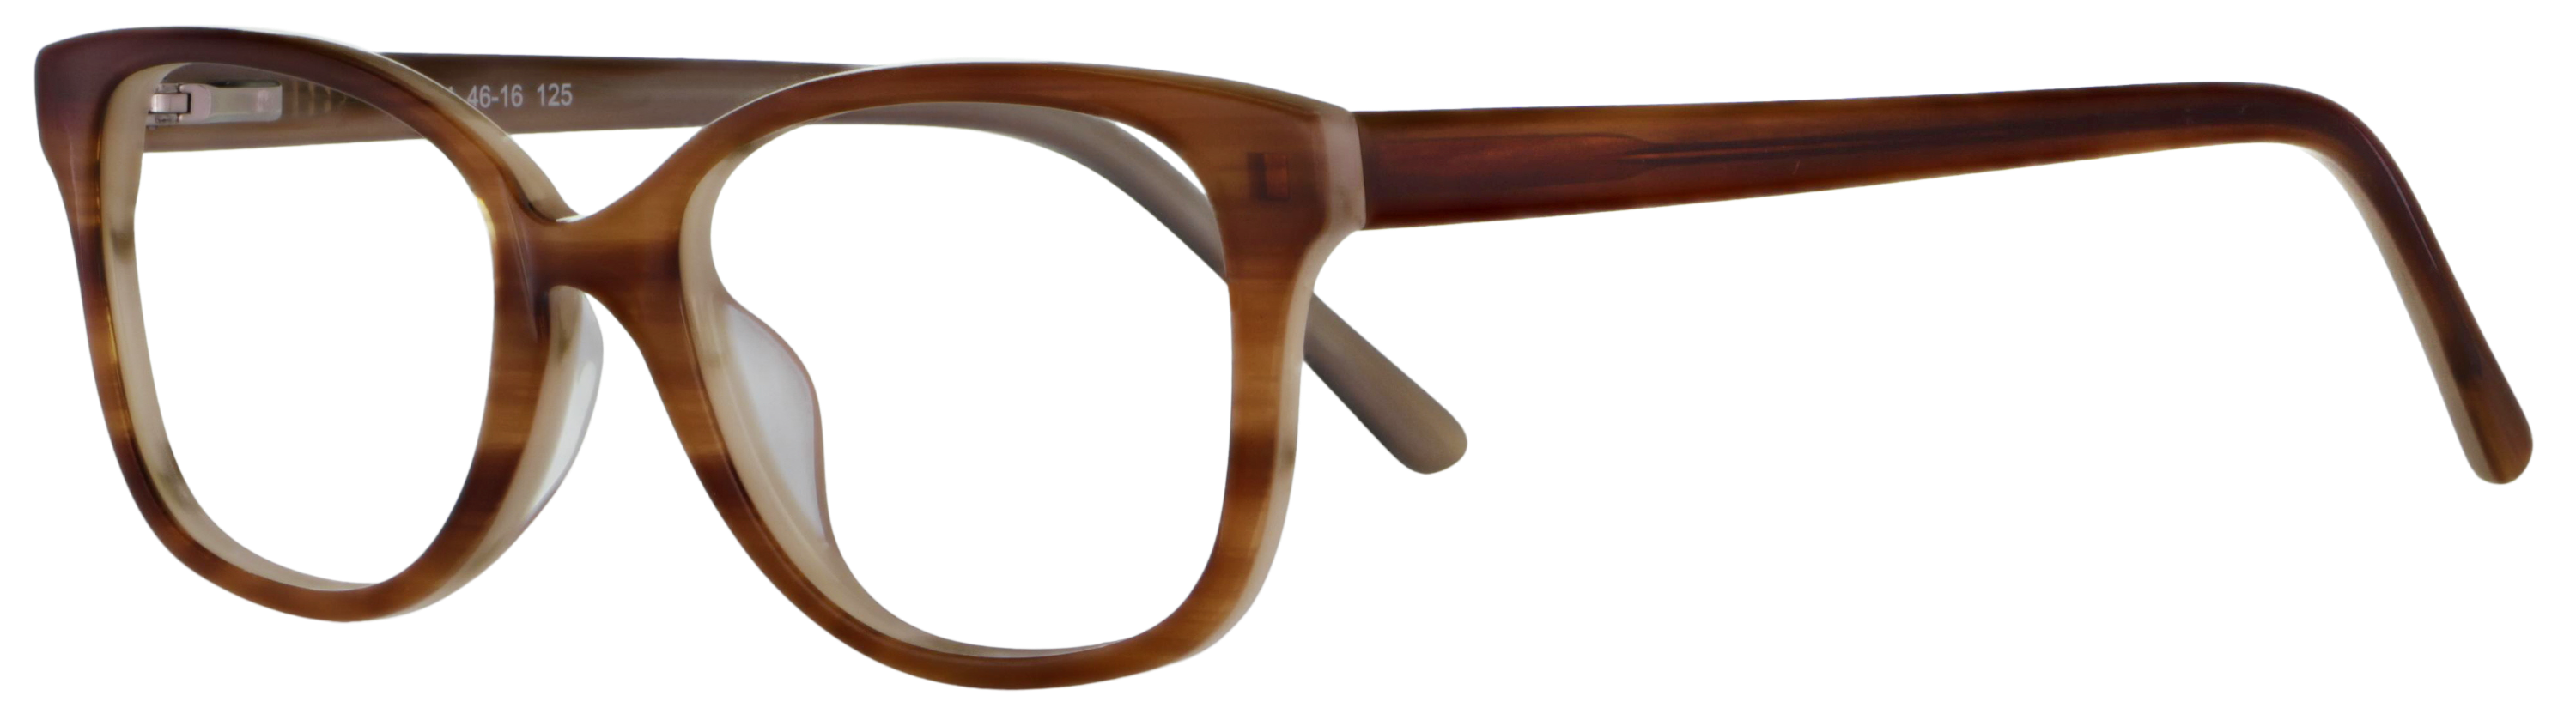 Das Bild zeigt die Korrektionsbrille 139861 von der Marke Abele Optik in braun.